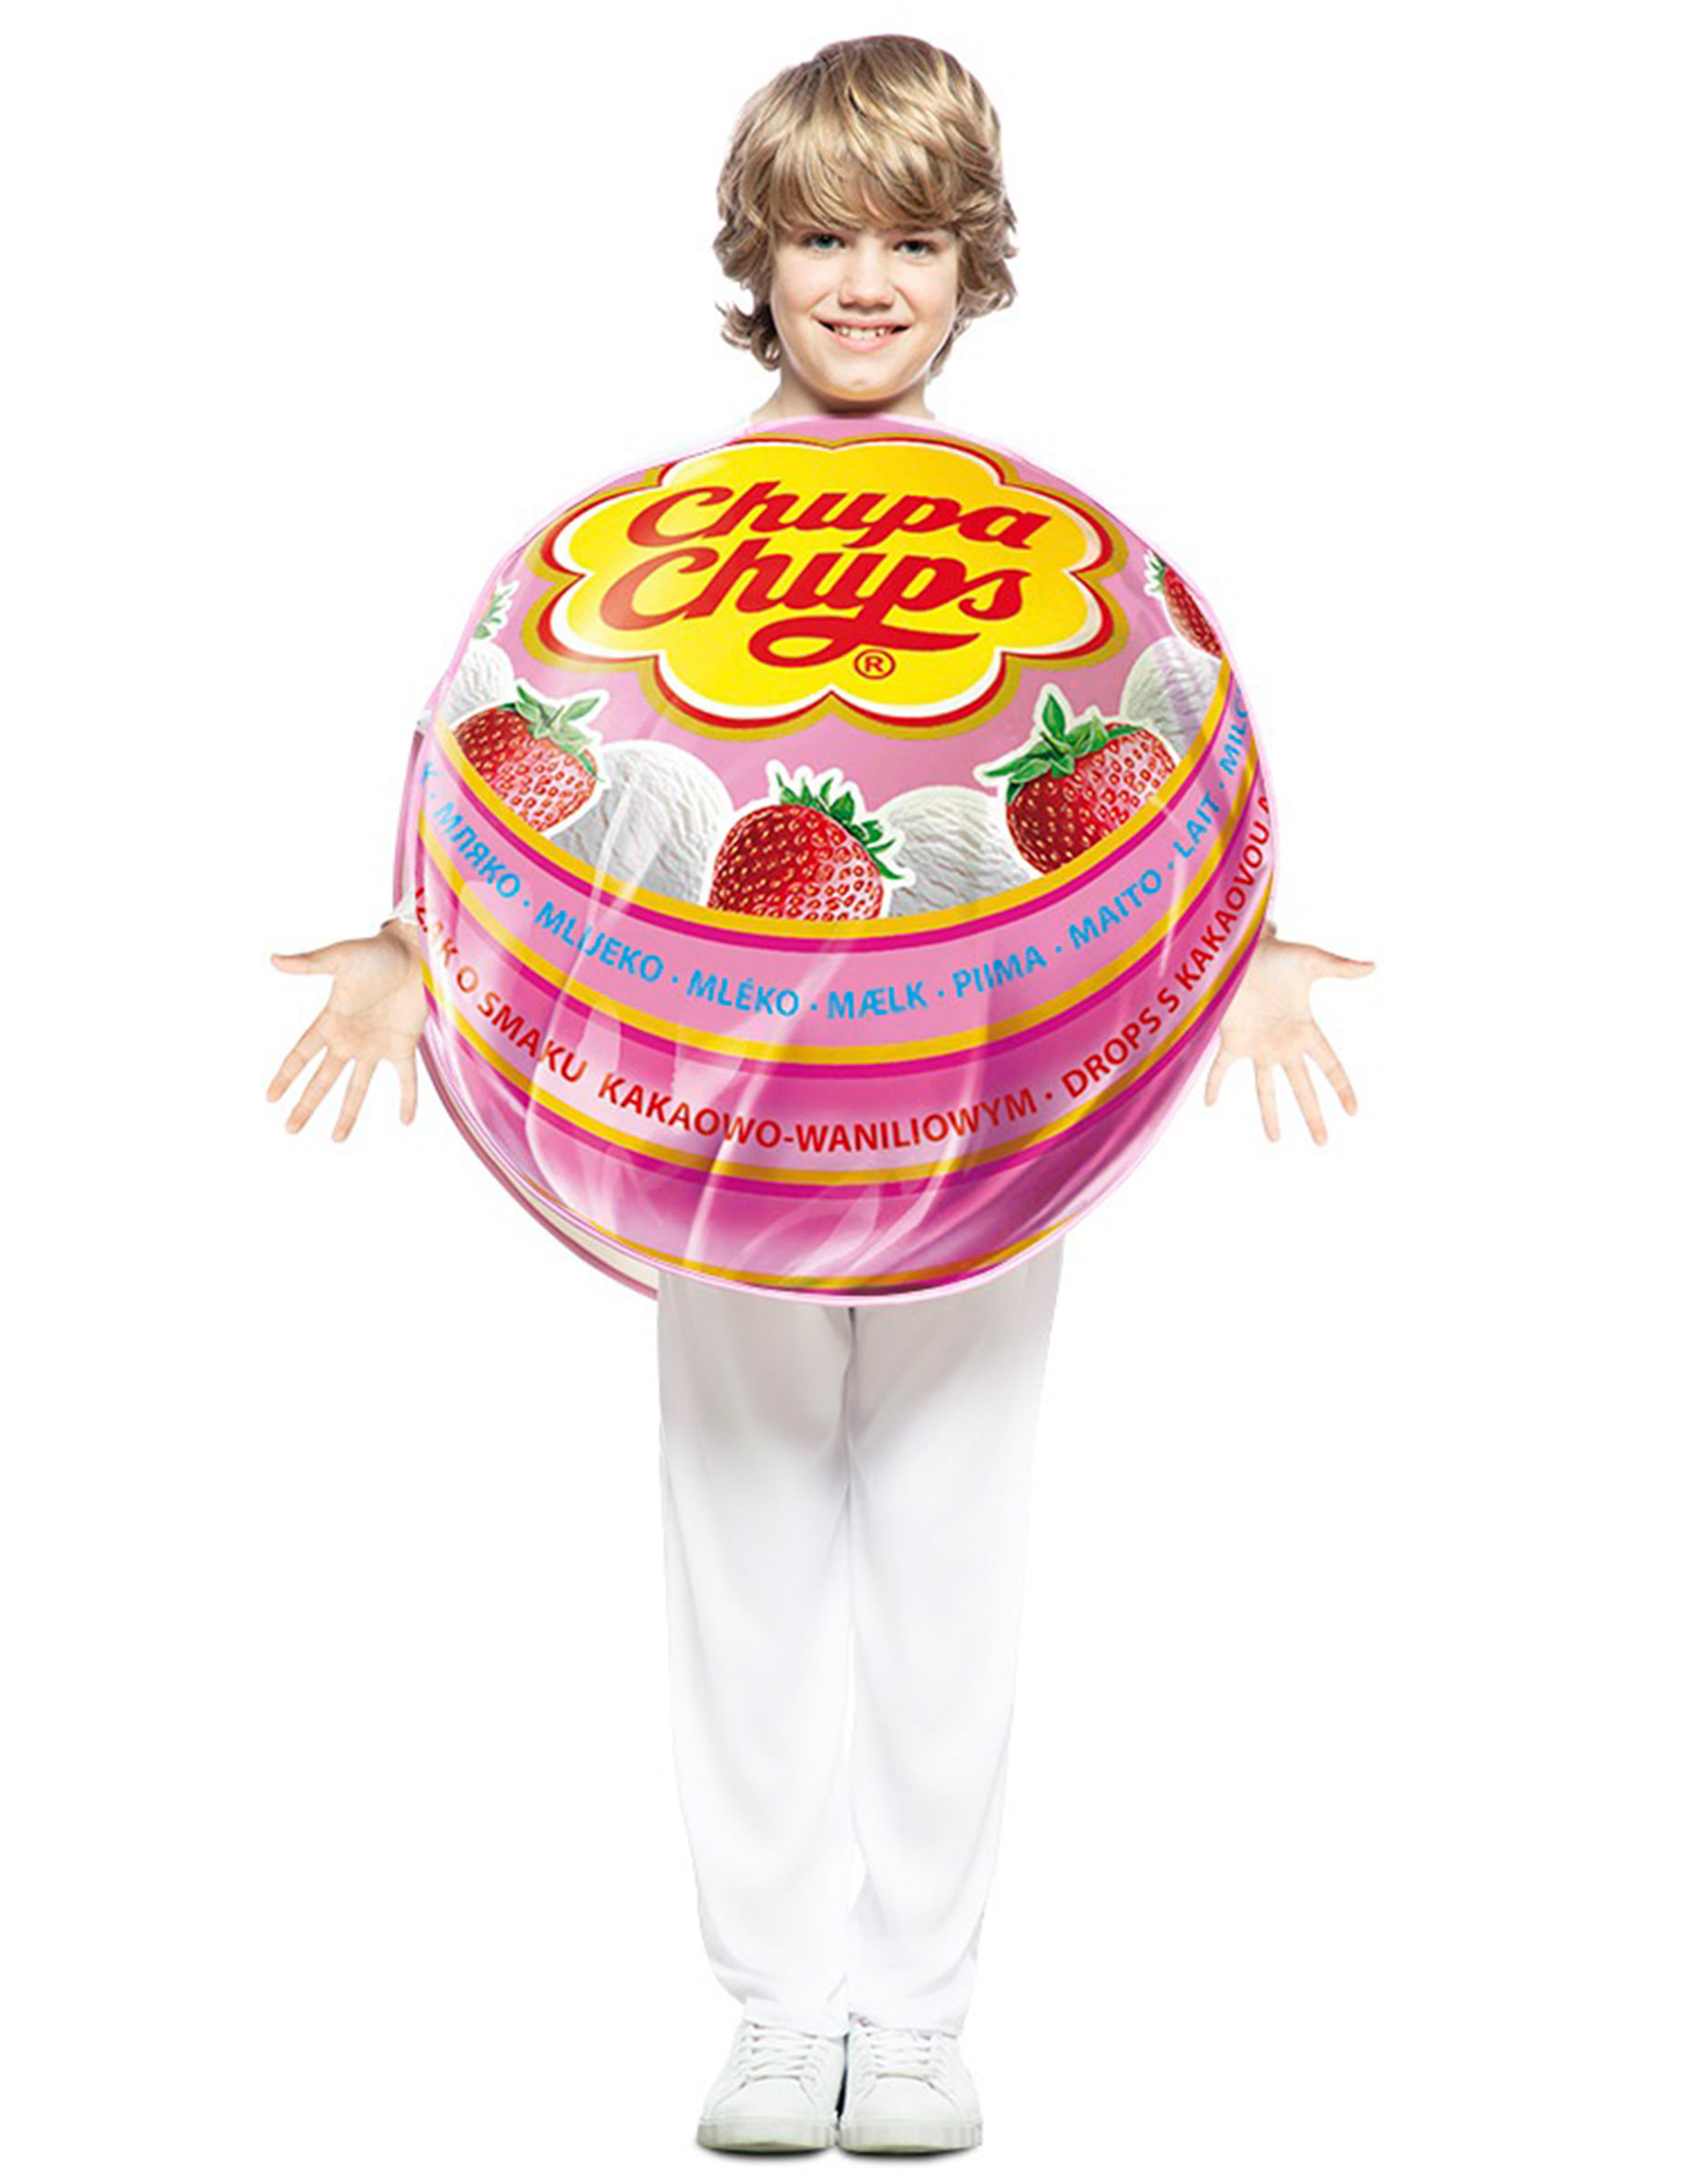 Offizielles Chupa Chups-Kostüm für Kinder Lollipop bunt von EUROCARNAVALES